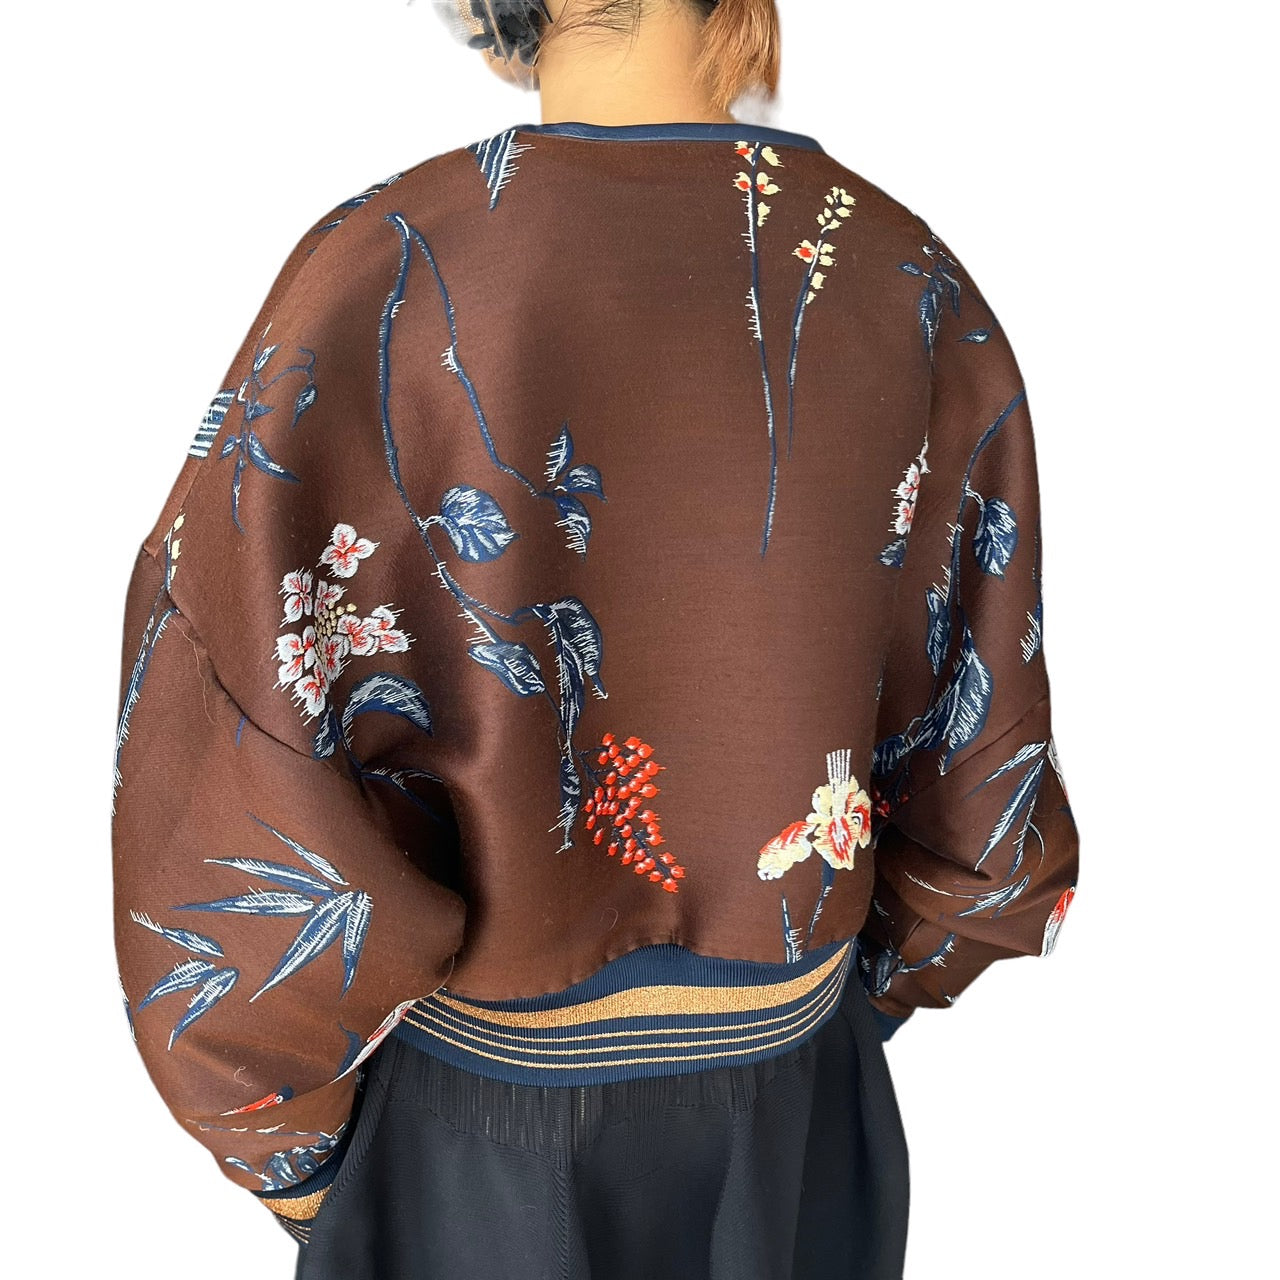 mame kurogouchi(マメクロゴウチ) 18AW double cloth flower  brouson/ダブルクロスフラワーブルゾン/刺繍/ジャケット MM18AW-JK045 2(Mサイズ程度) ブラウン